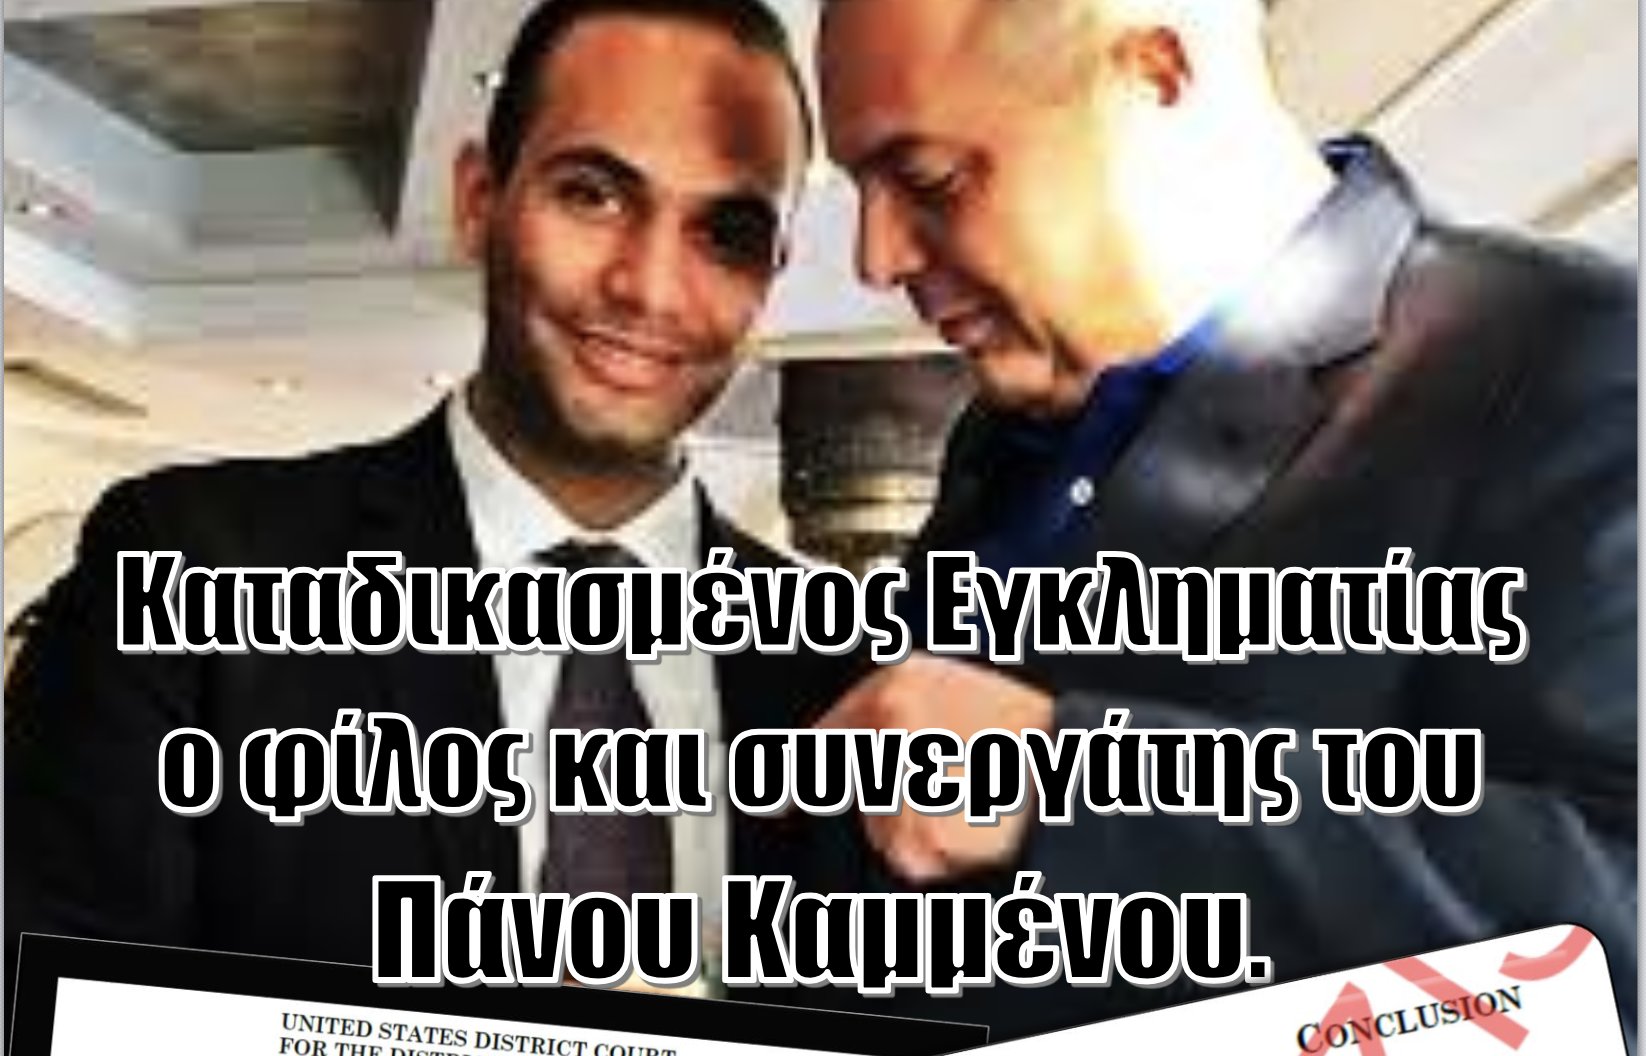 Καταδικασμένος Εγκληματίας ο φίλος και συνεργάτης του Πάνου Καμμένου, Τζόρτζ Παπαδόπουλος!